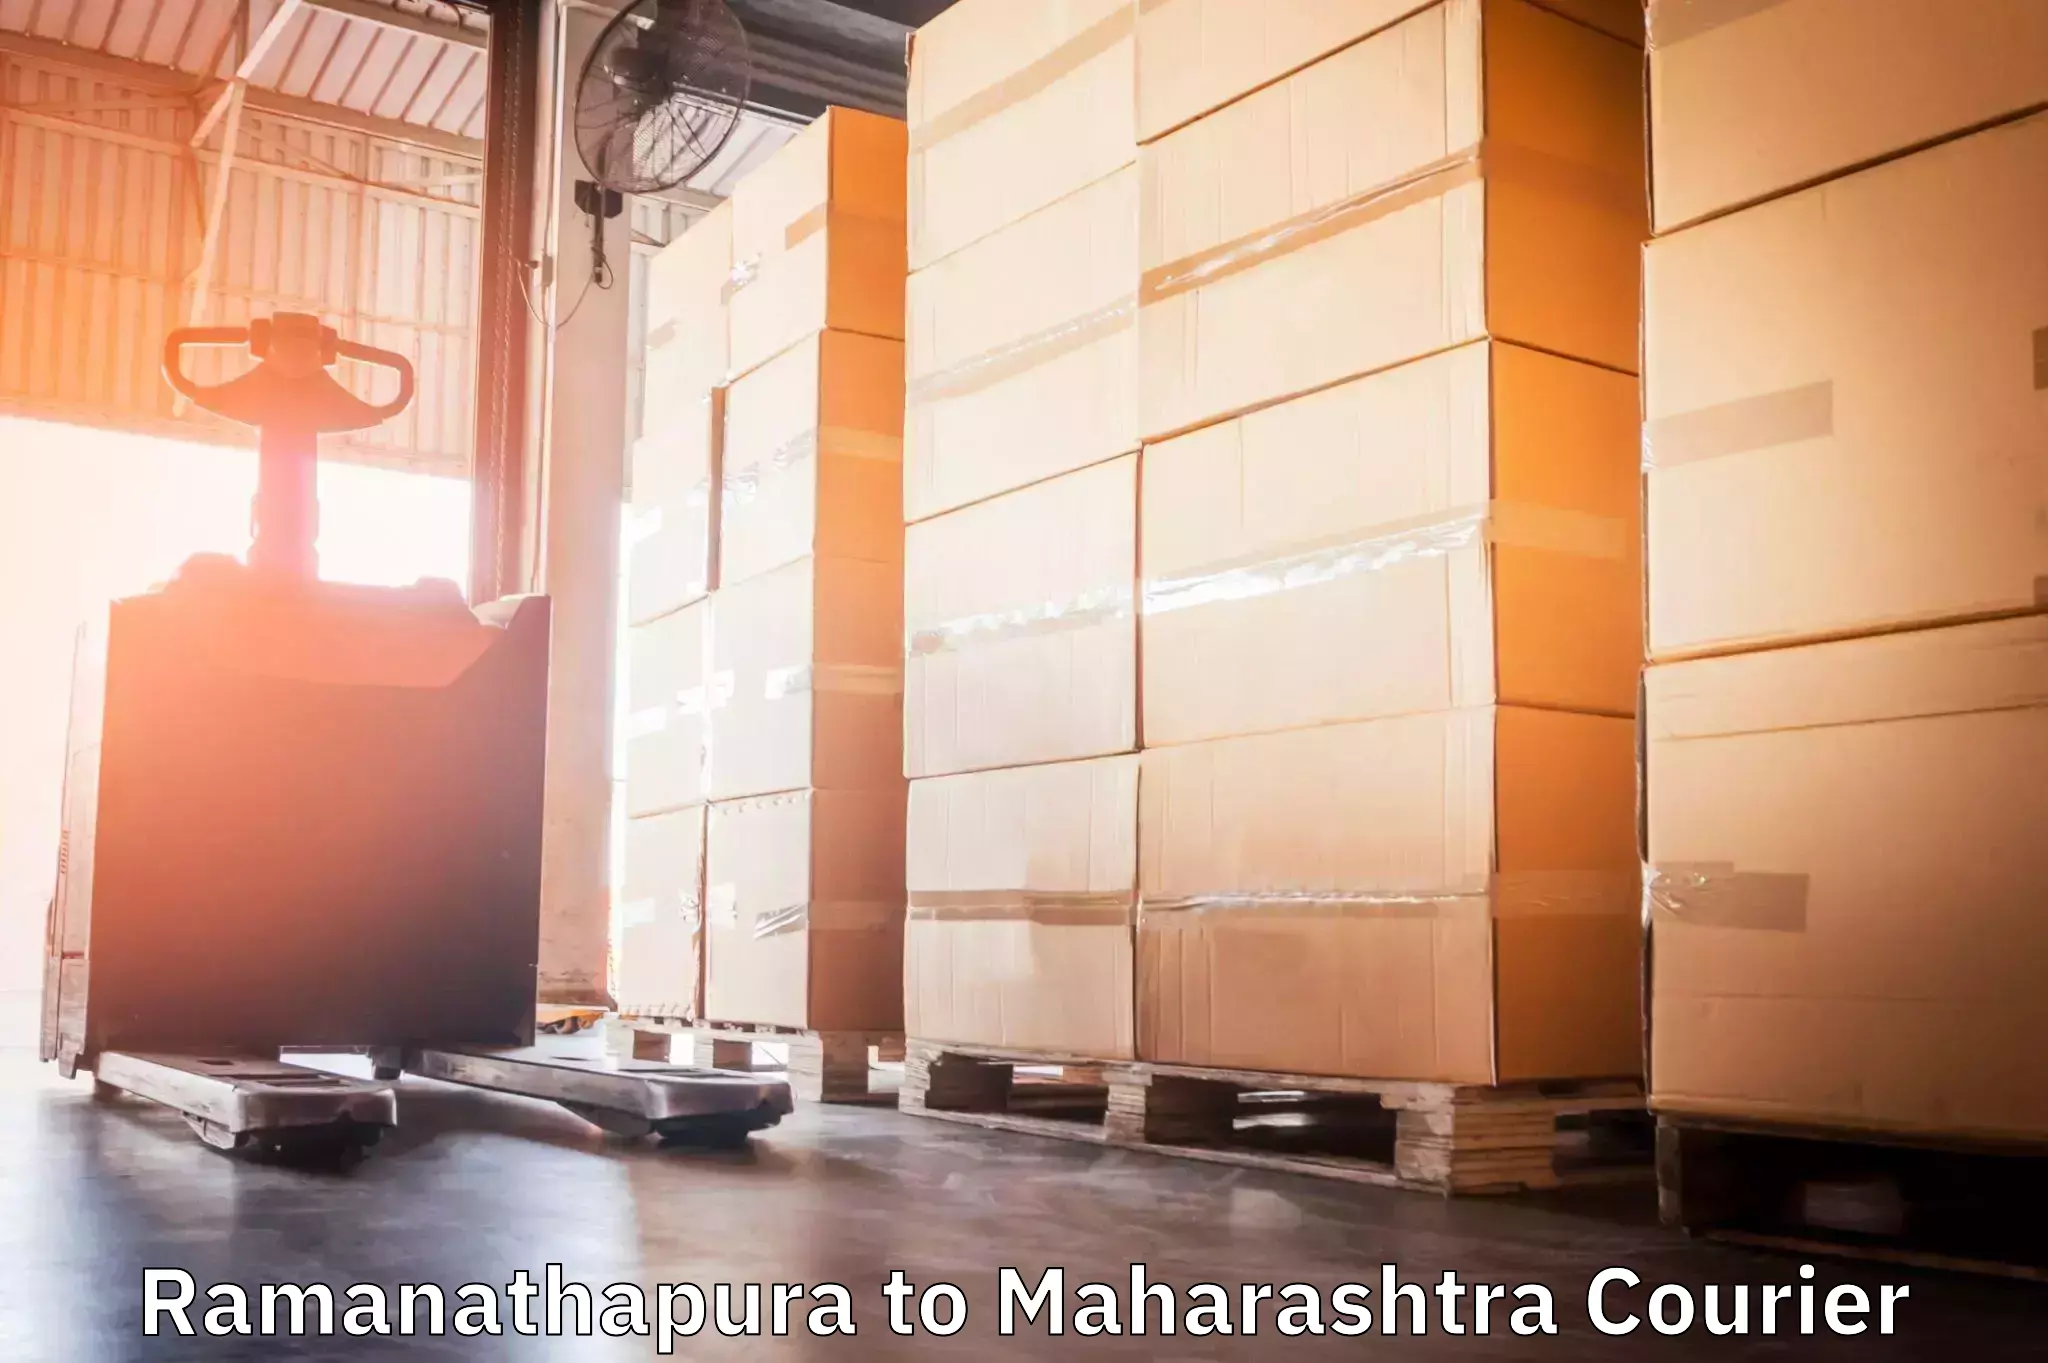 Courier insurance Ramanathapura to Maharashtra